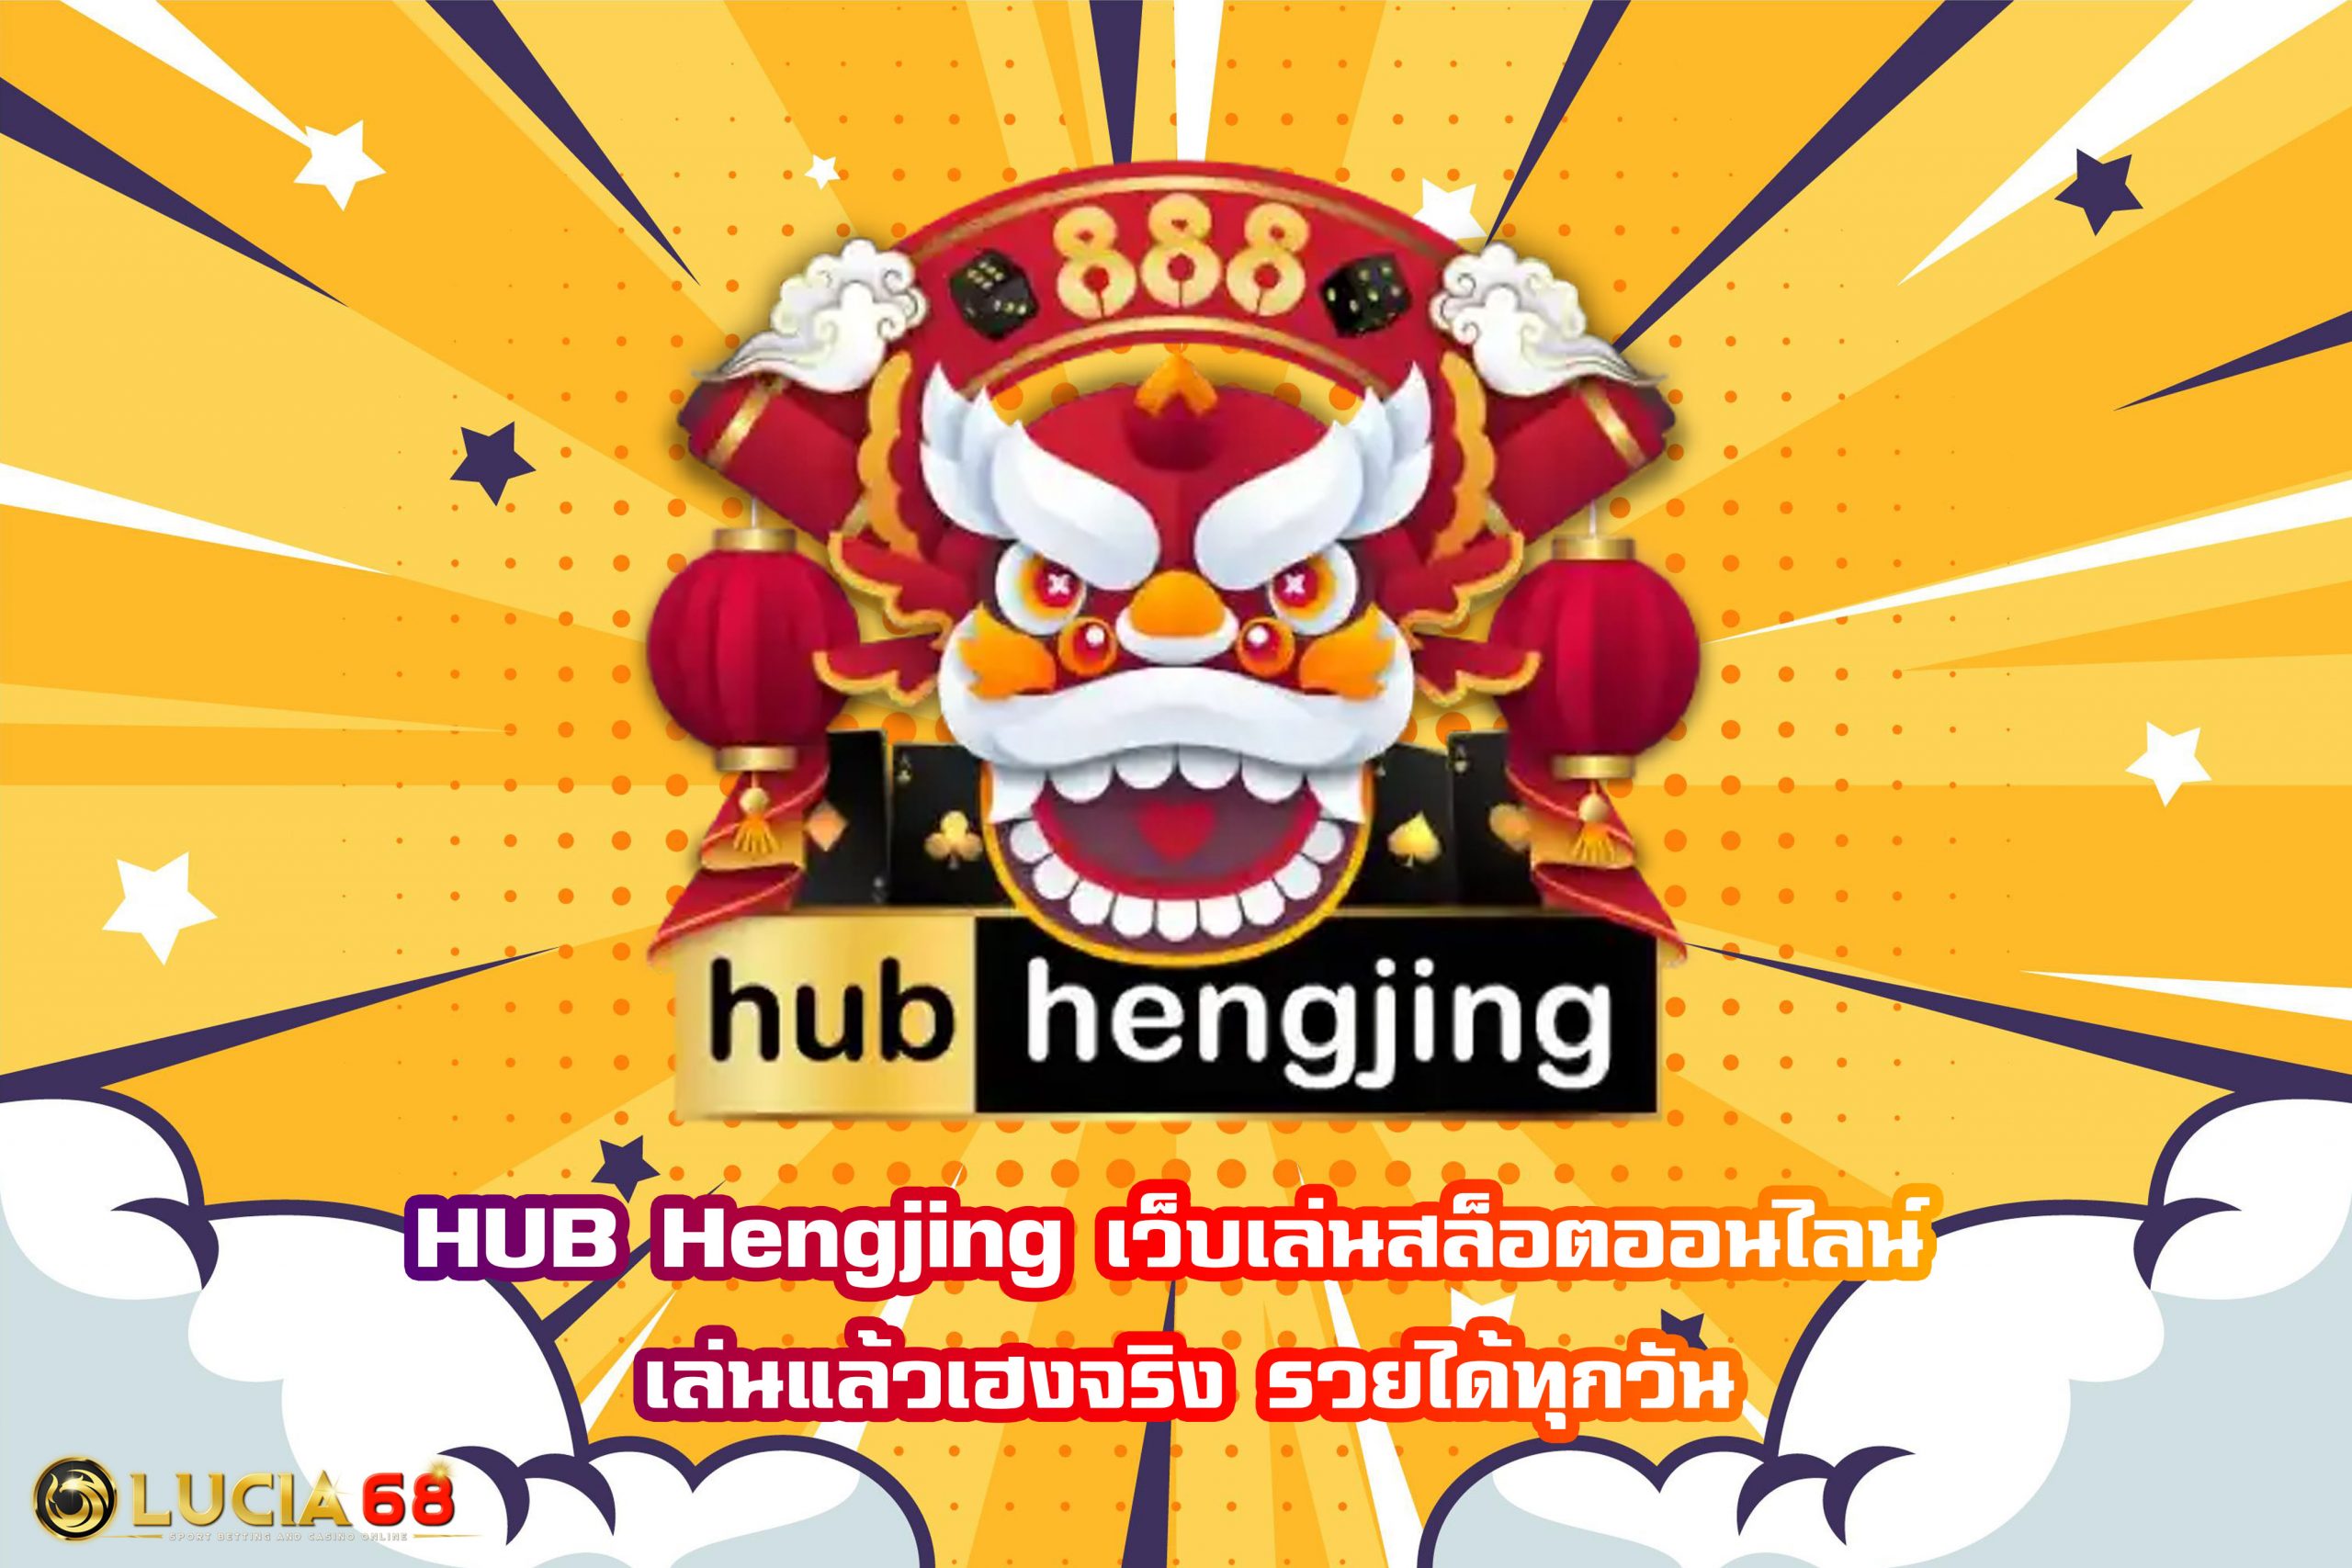 HUB Hengjing เว็บเล่นสล็อตออนไลน์ เล่นแล้วเฮงจริง รวยได้ทุกวัน